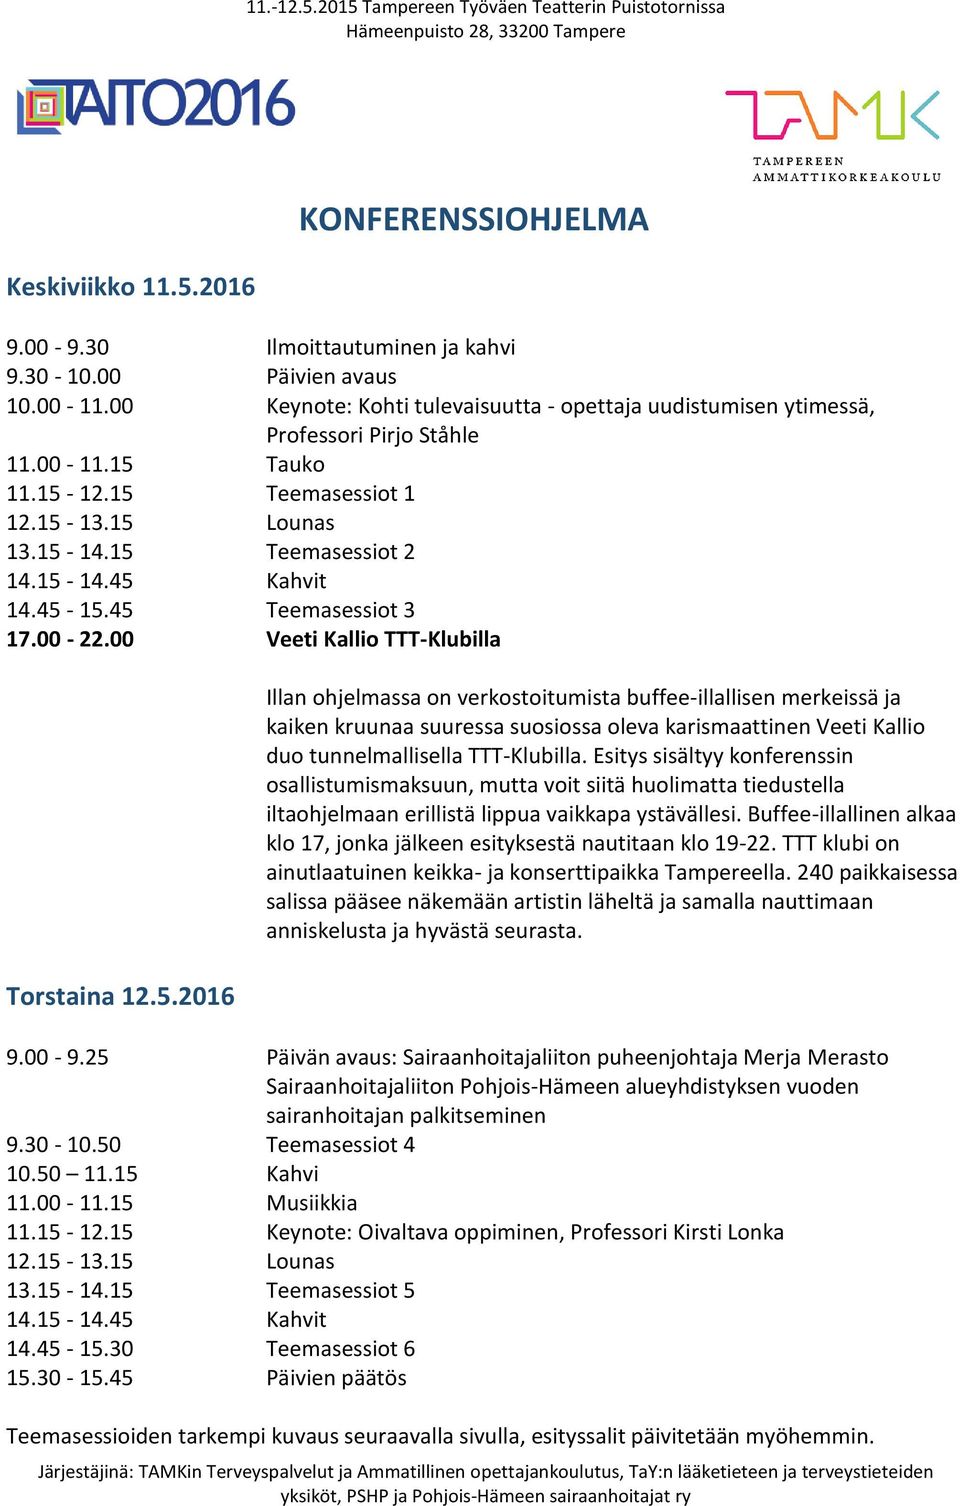 45-15.45 Teemasessiot 3 17.00-22.00 Veeti Kallio TTT-Klubilla Torstaina 12.5.2016 Illan ohjelmassa on verkostoitumista buffee-illallisen merkeissä ja kaiken kruunaa suuressa suosiossa oleva karismaattinen Veeti Kallio duo tunnelmallisella TTT-Klubilla.